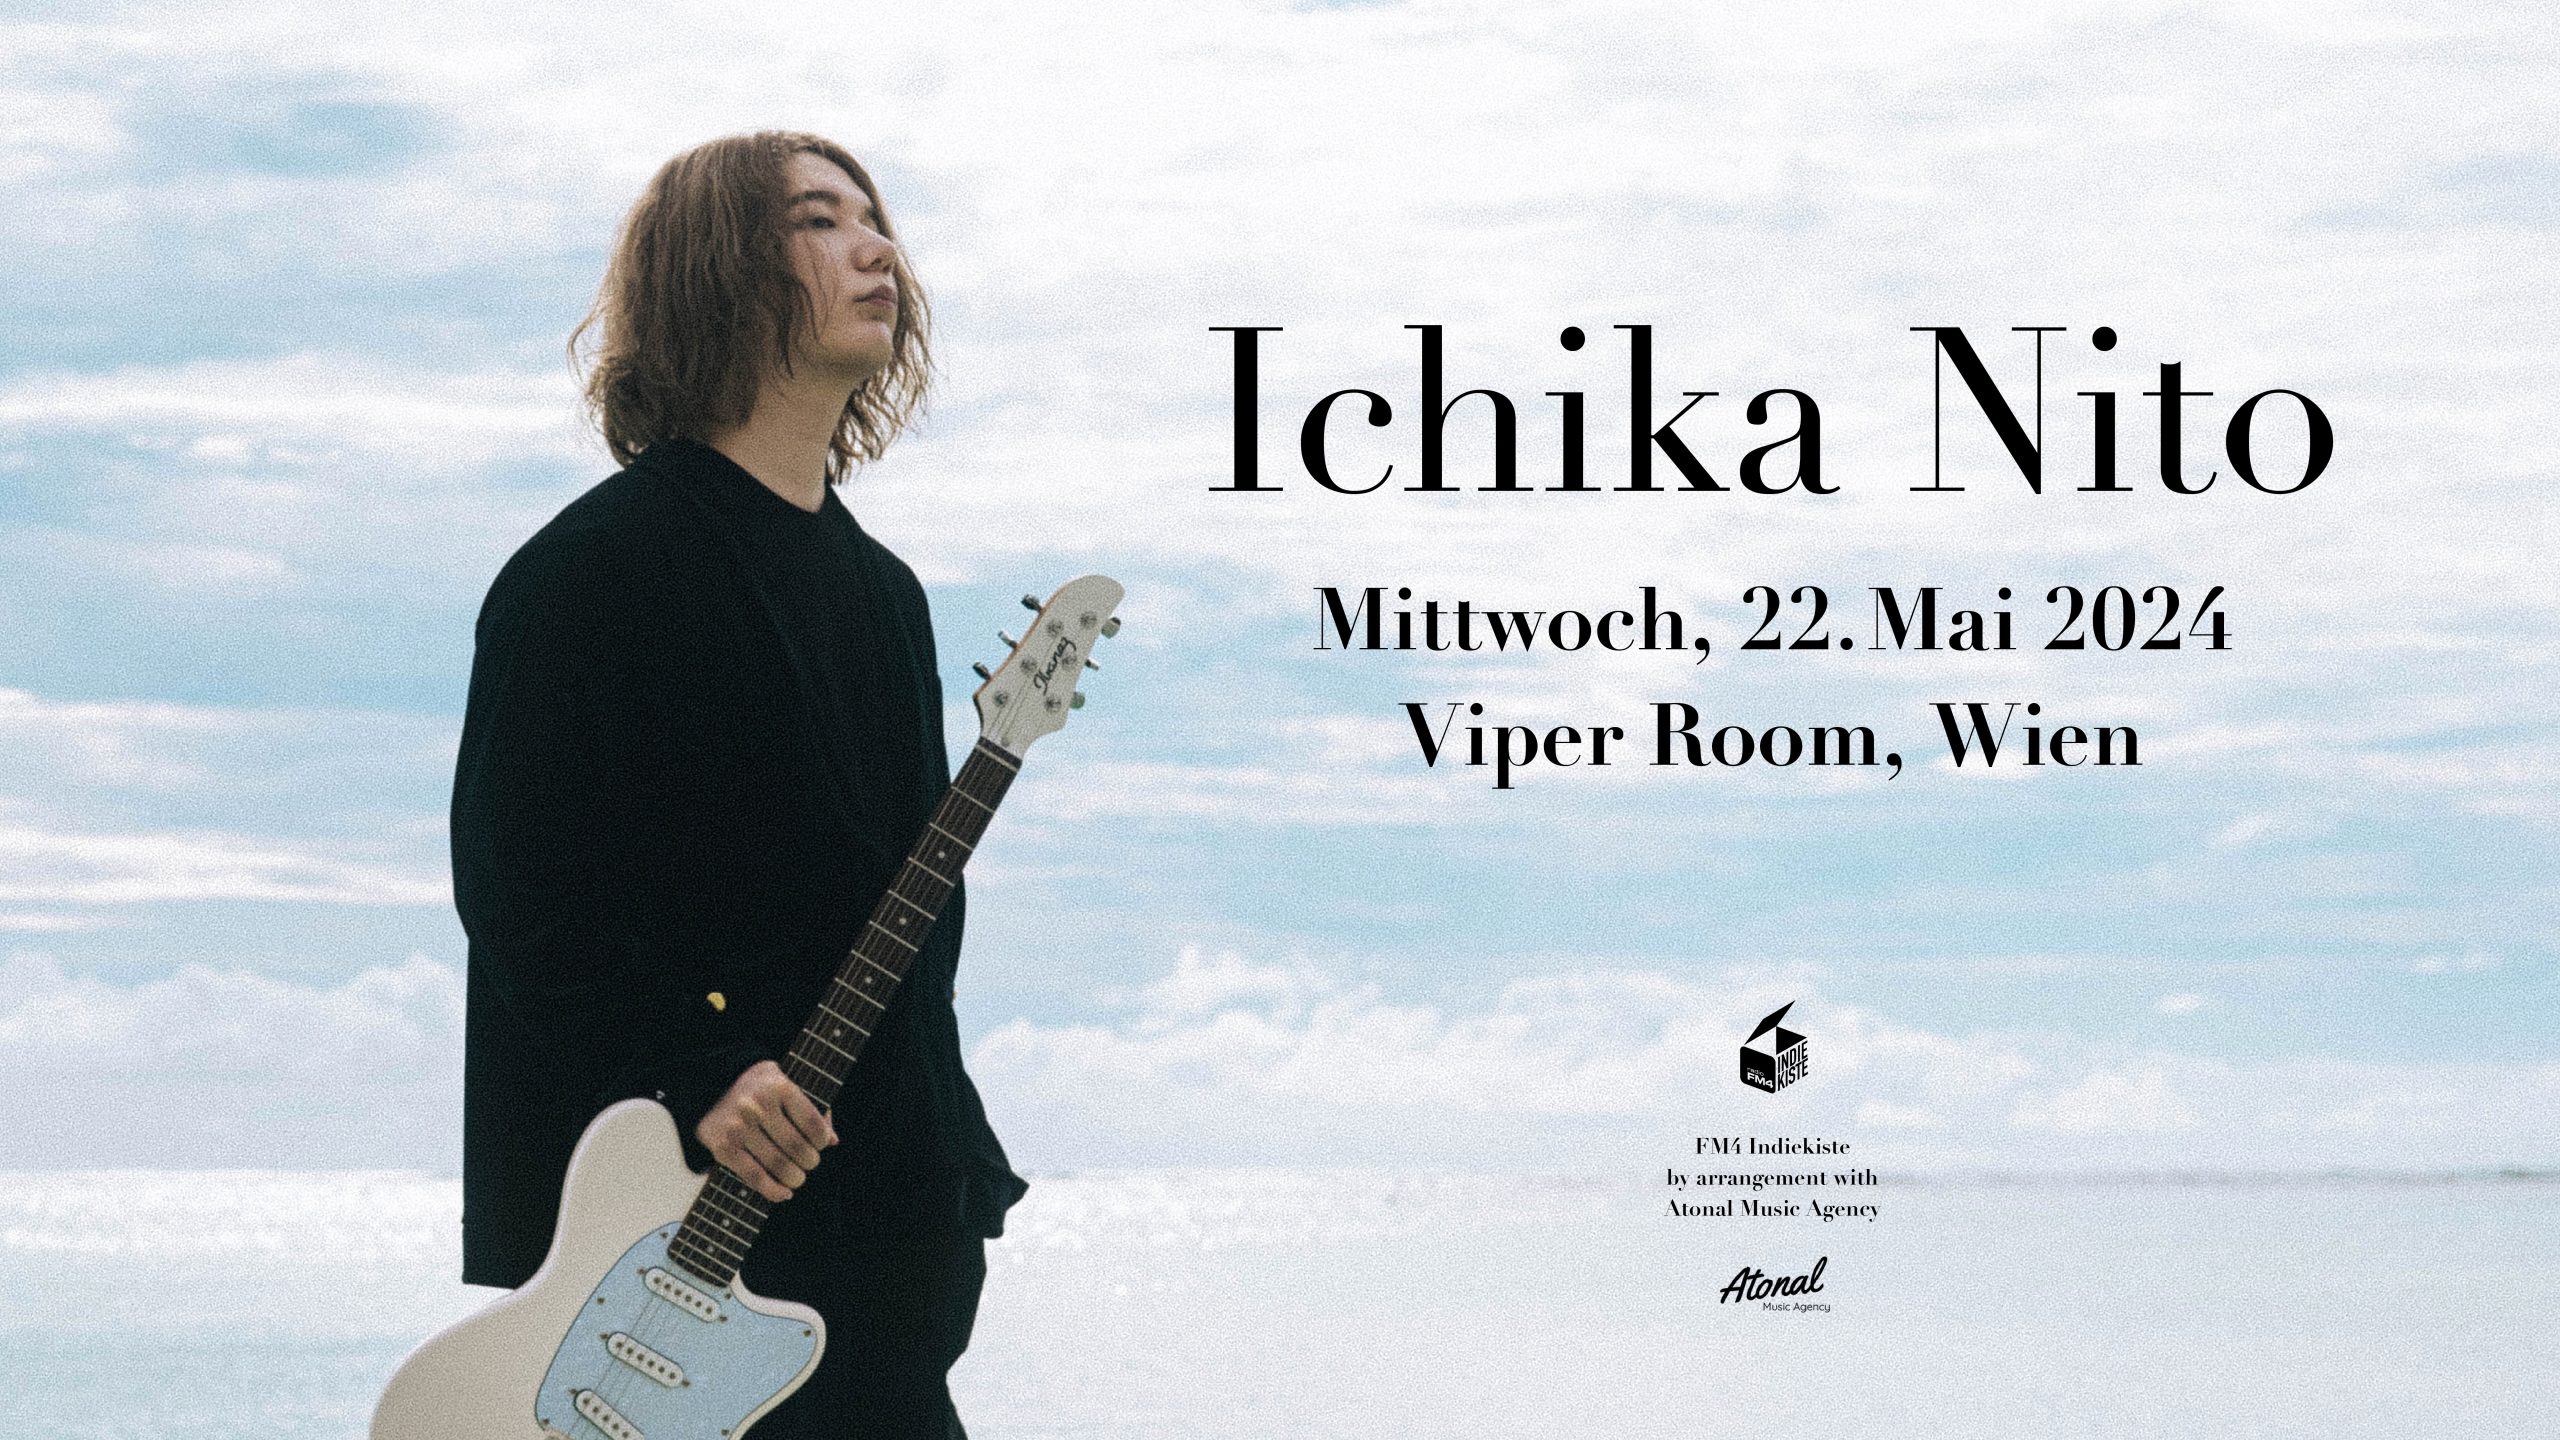 Ichika Nito am 22. May 2024 @ Viper Room.